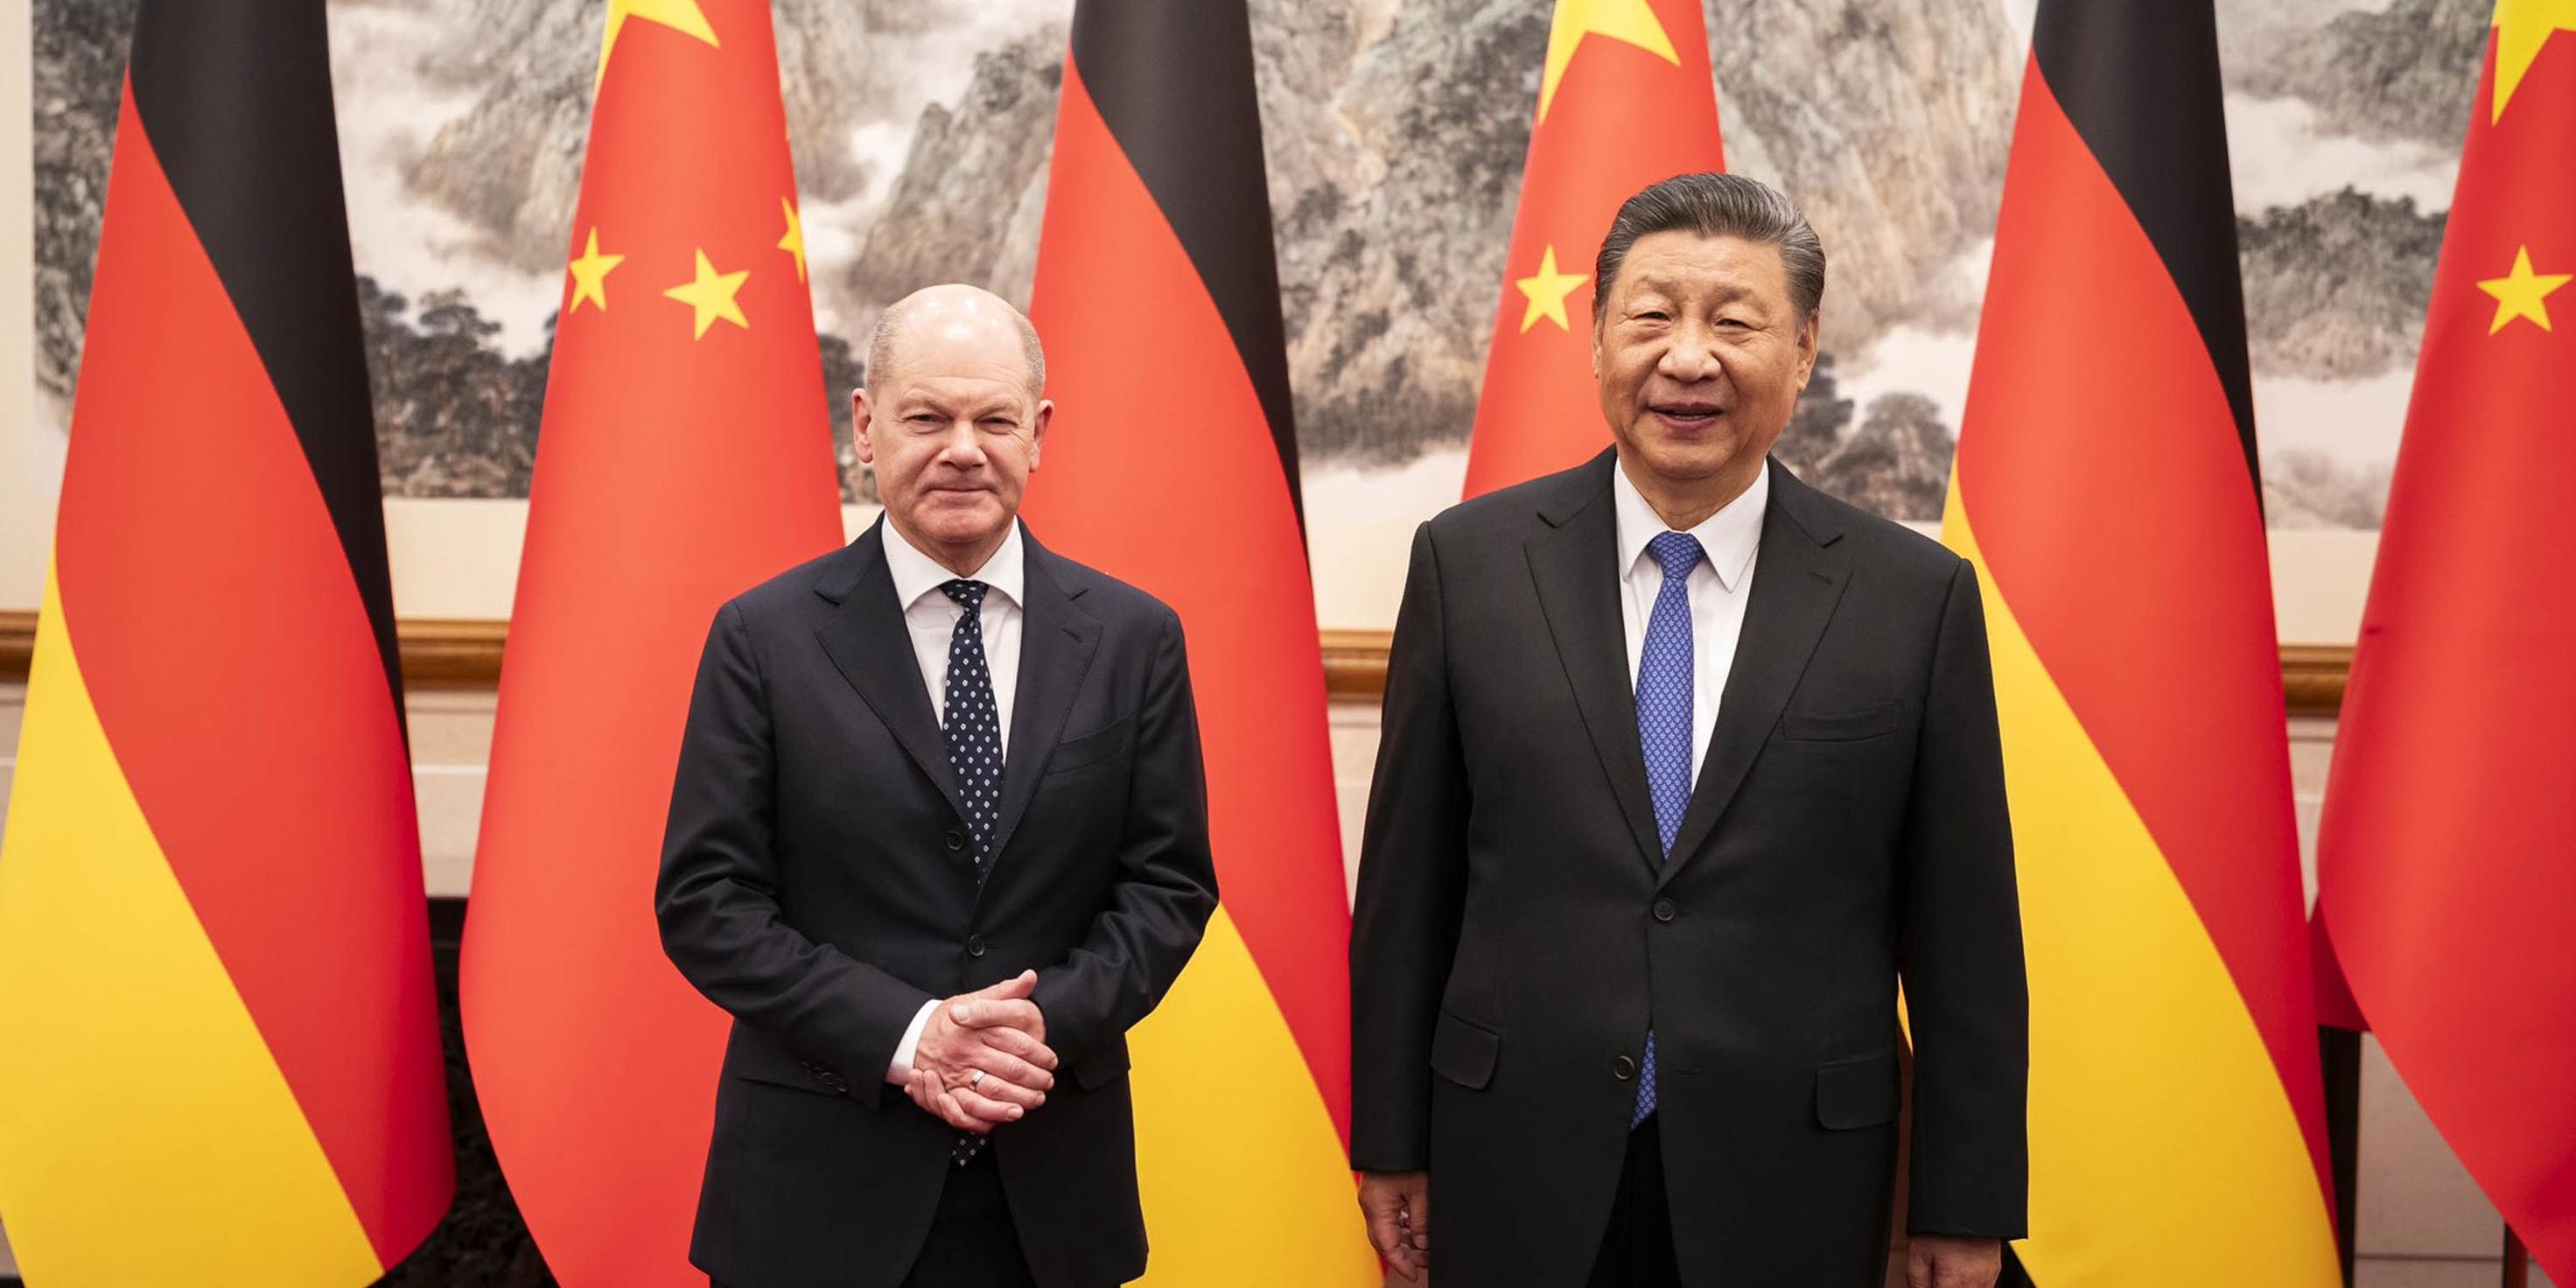 أهداف زيارة المستشار الألماني إلى الصين